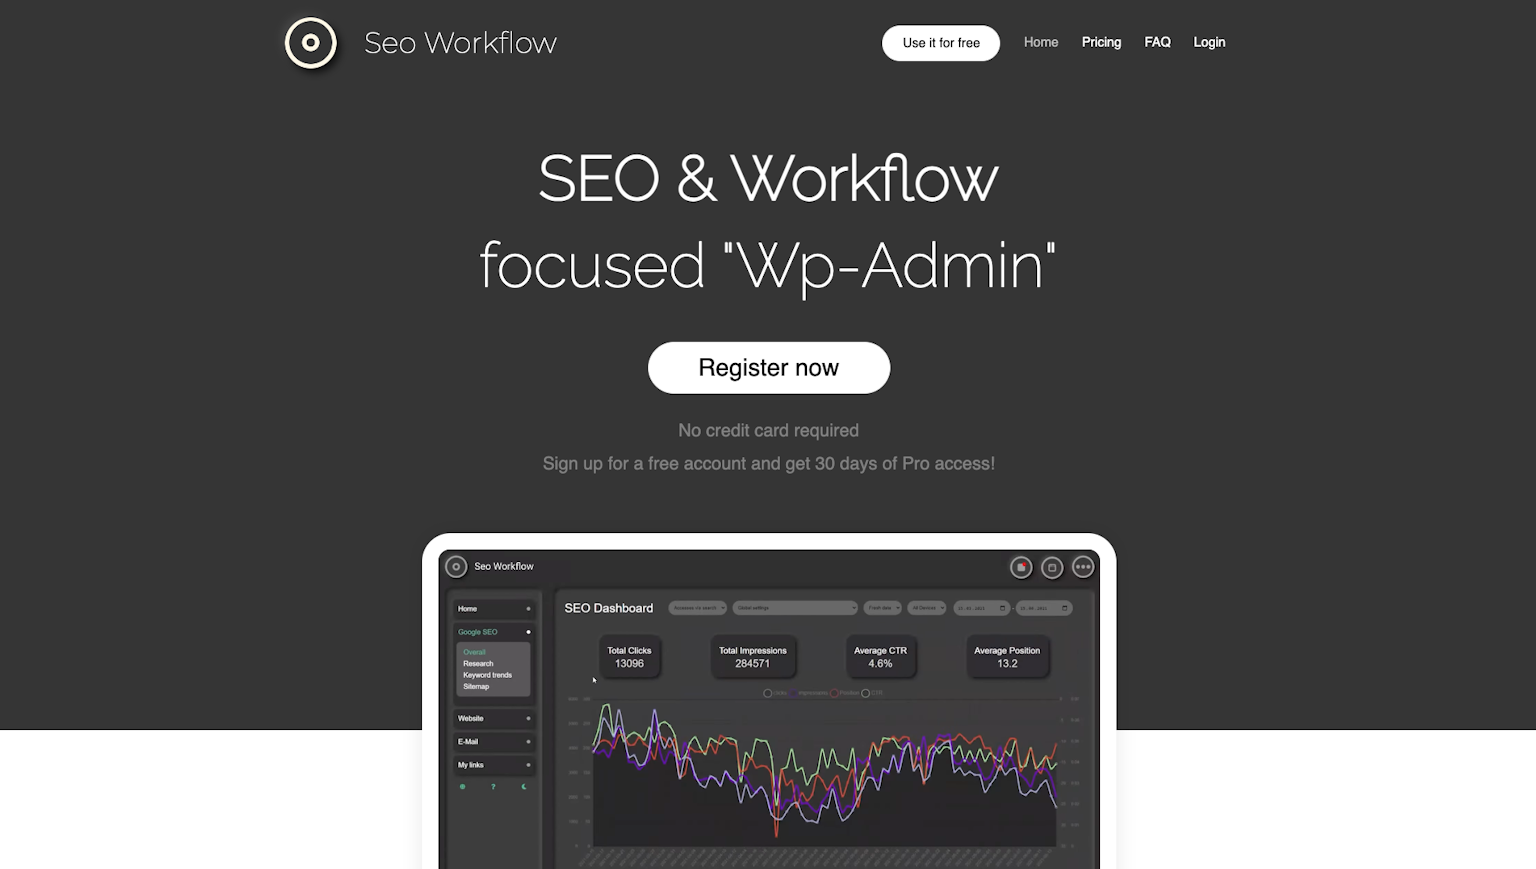 SEO-Workflow.com